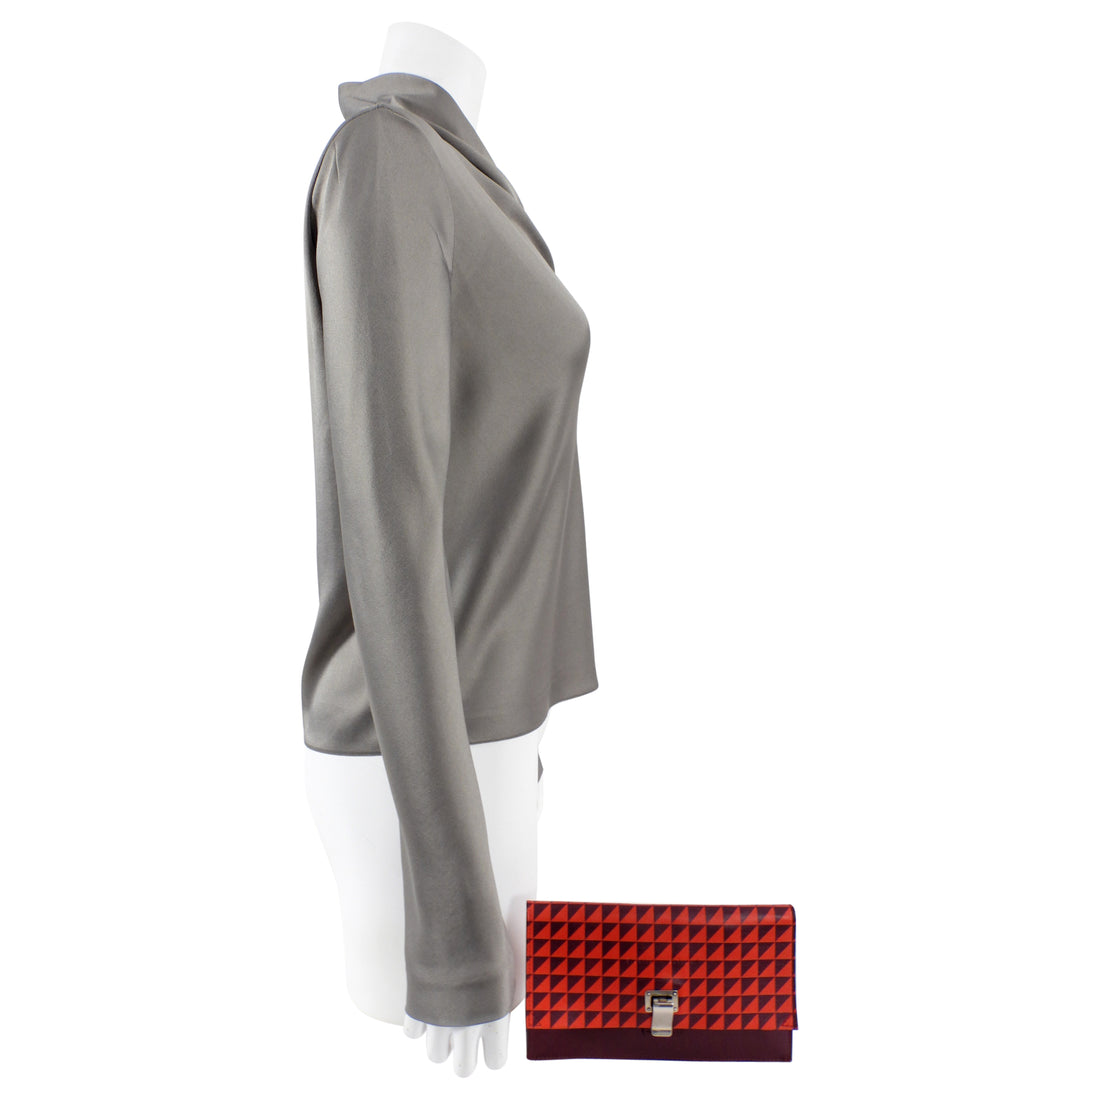 Proenza Schouler Red Geometric Leather Mini Lunch Clutch Bag